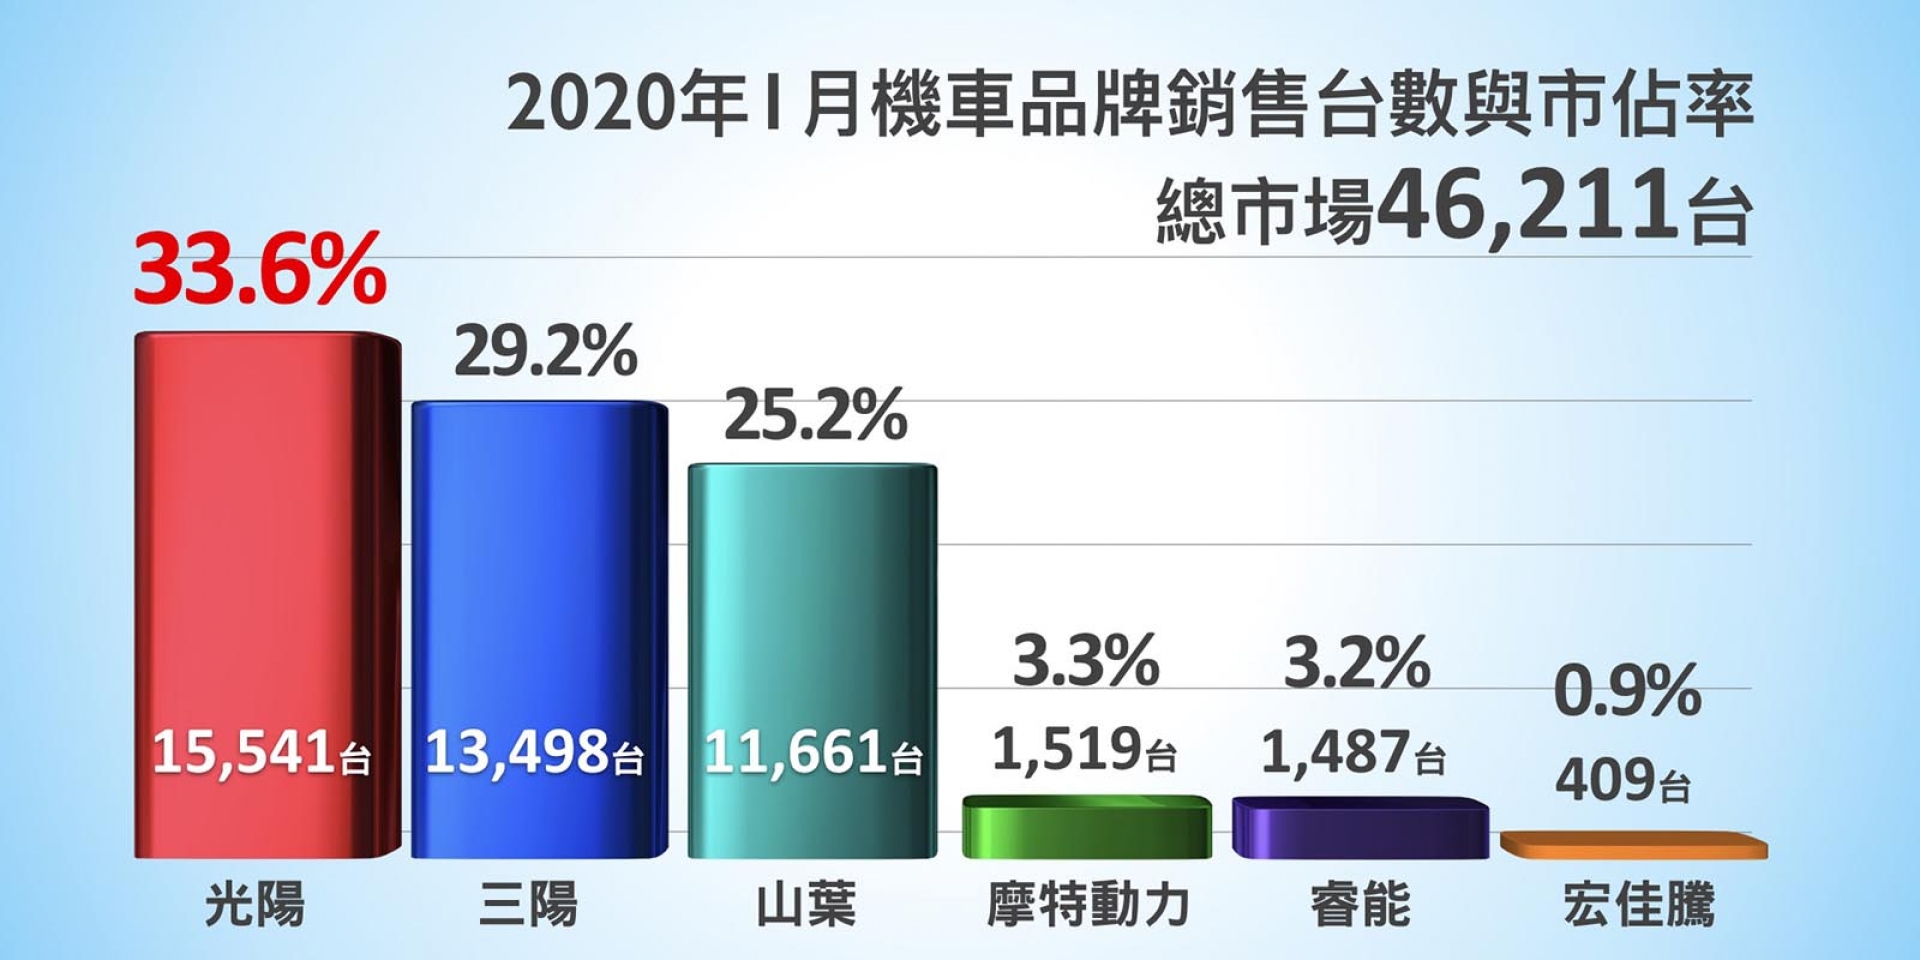 官方新聞稿。台灣機車市場一月份掛牌數據報告 油車龍頭KYMCO 33.6%；電車龍頭 GOGORO 3.2%